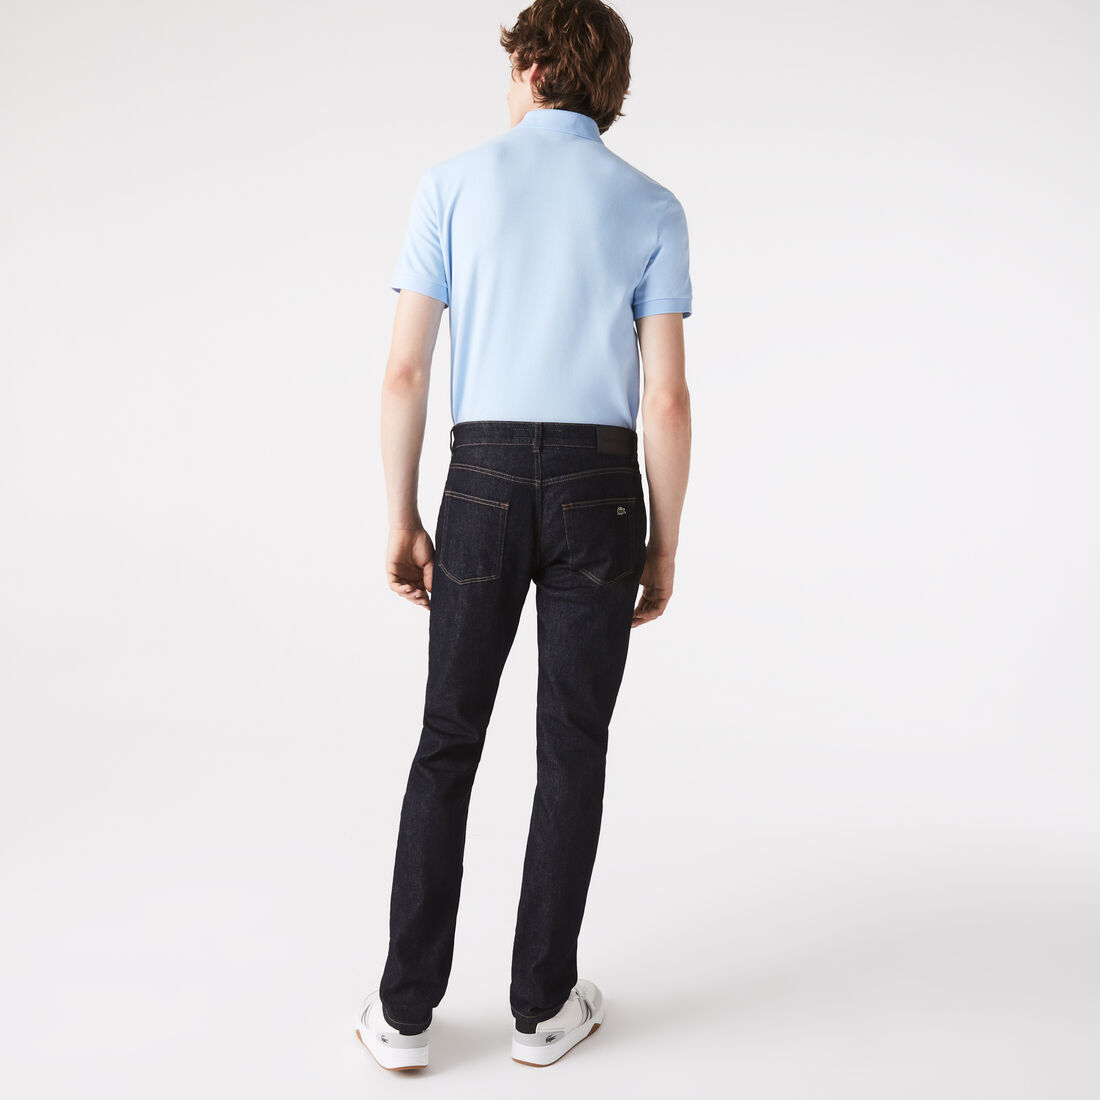 Lacoste Slim Fit Stretch Baumwoll Denim Jeans Herren Blau | XZYJ-94721